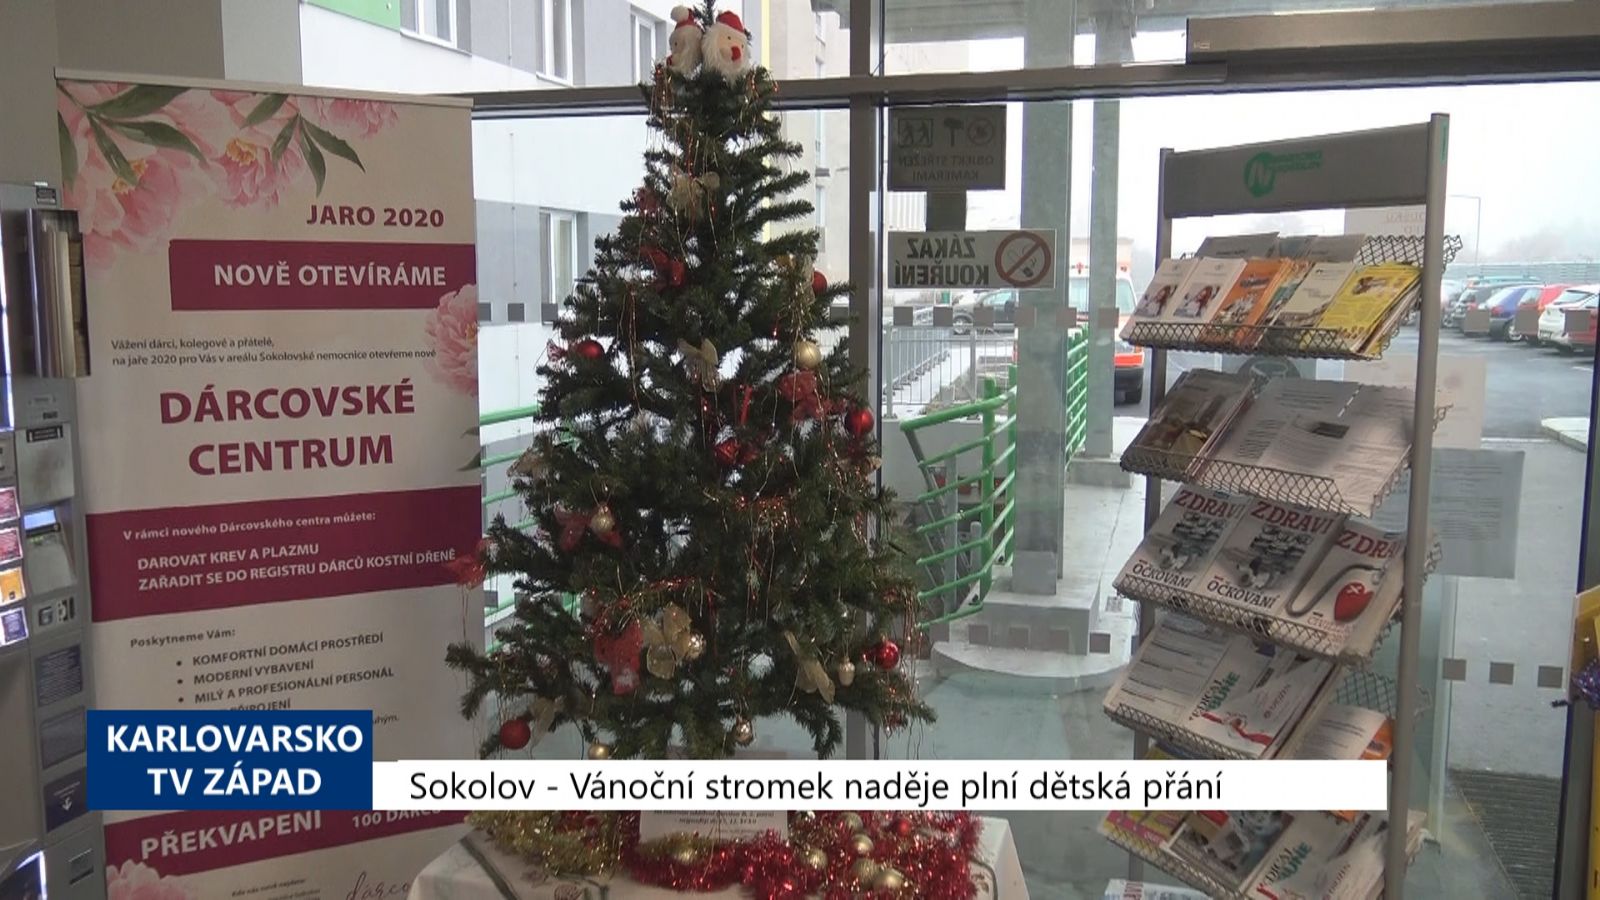 Sokolov: Vánoční stromek naděje plní dětská přání (TV Západ)